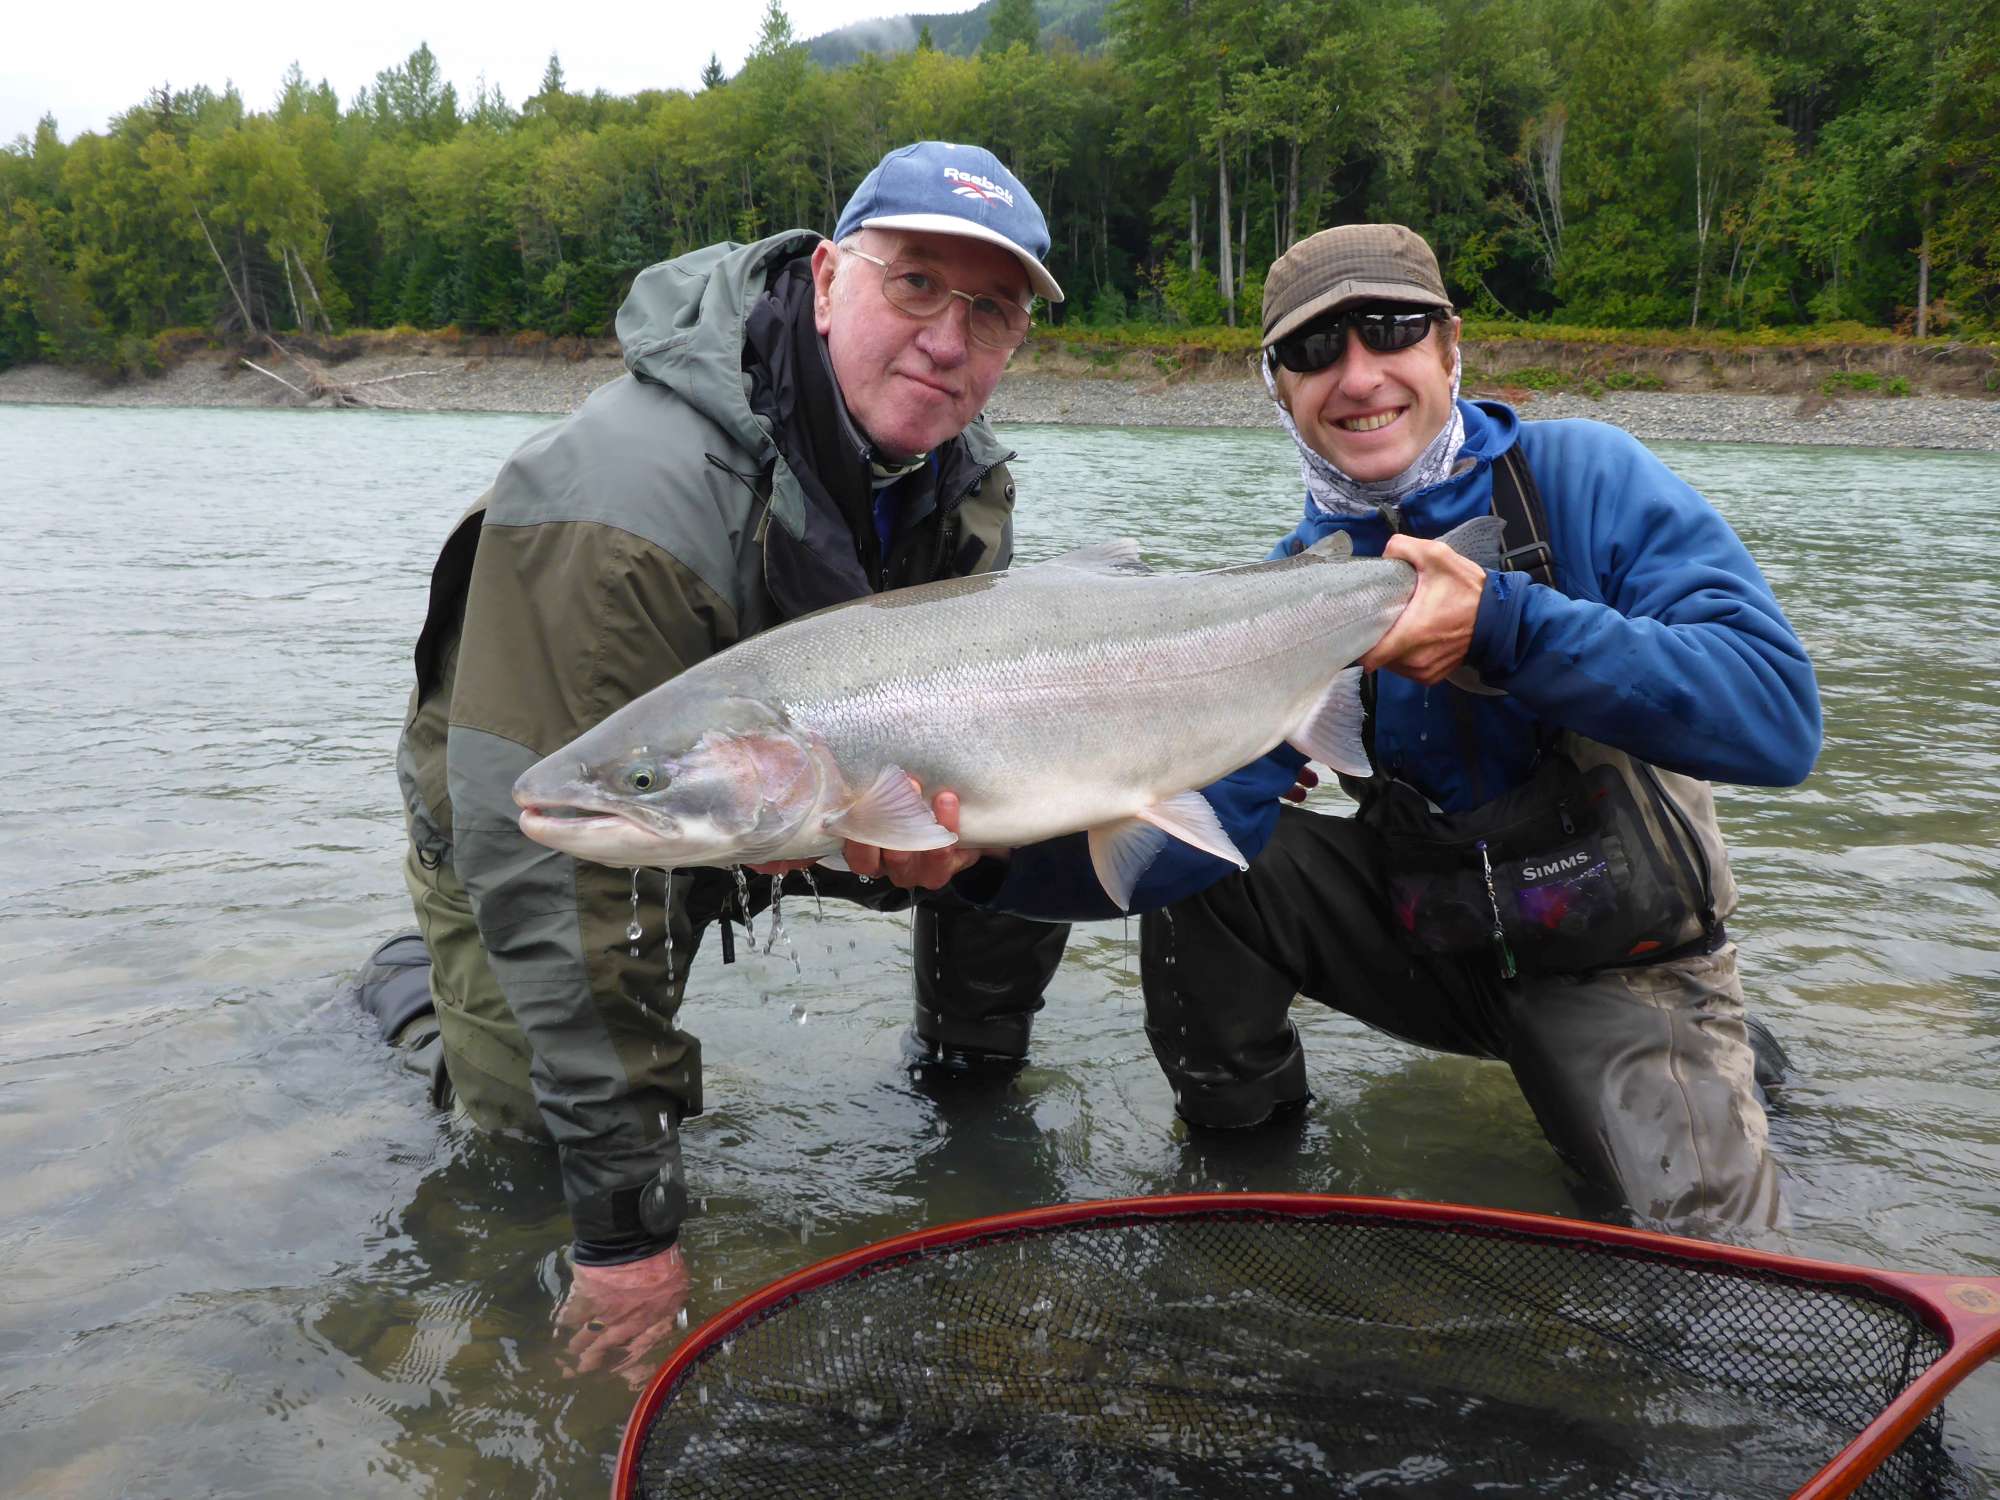 Canada; Steelhead fishing in British Columbia, last prime autumn